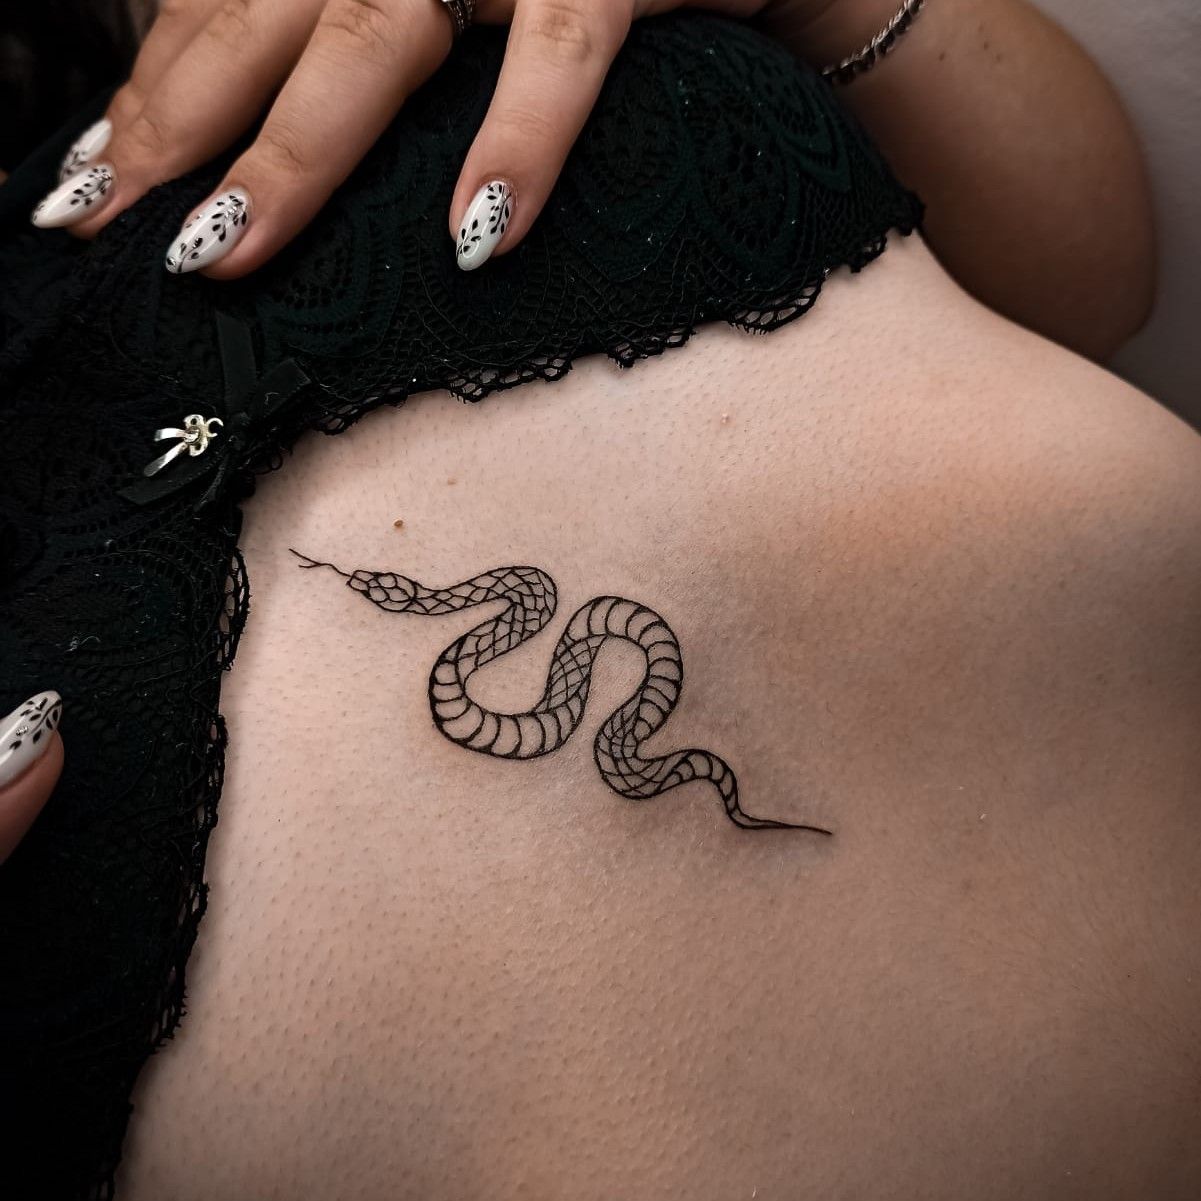 Portfolio usługi Tatuaż minimalistyczny (zatwierdzenie szkicu)